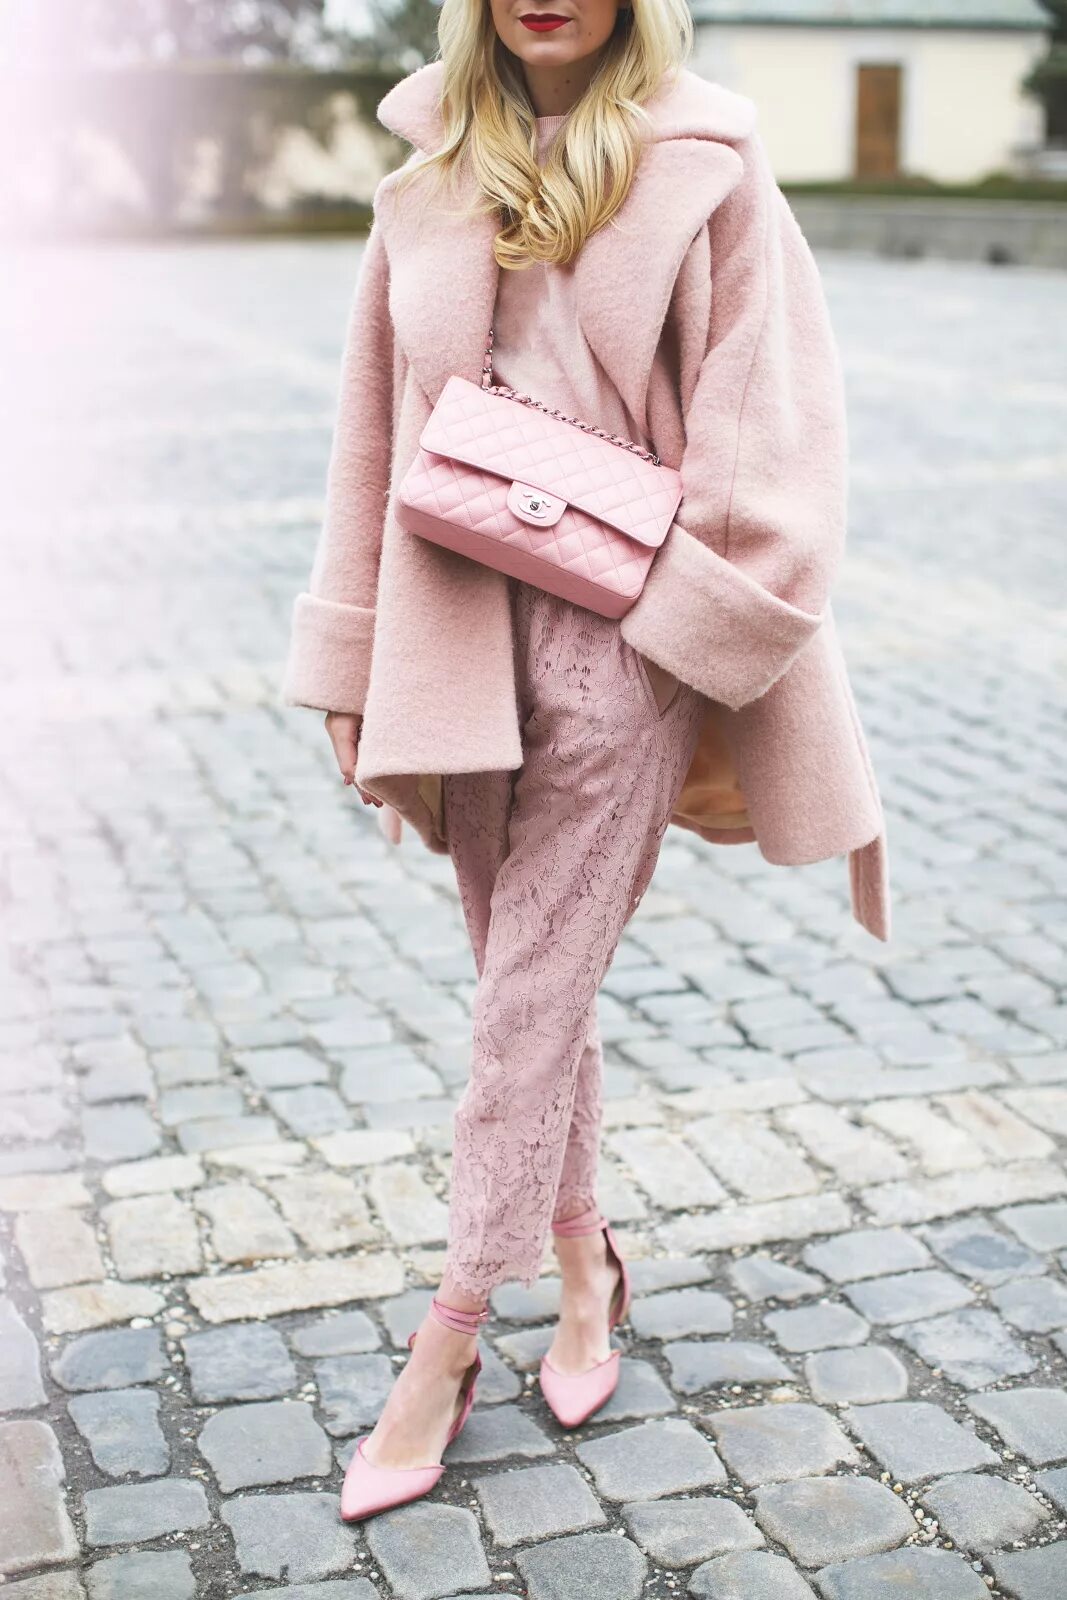 С чем надеть розовую. Розовое пальто. Нежный стиль в одежде. Розовый образ. Стильные образы в пастельных тонах.